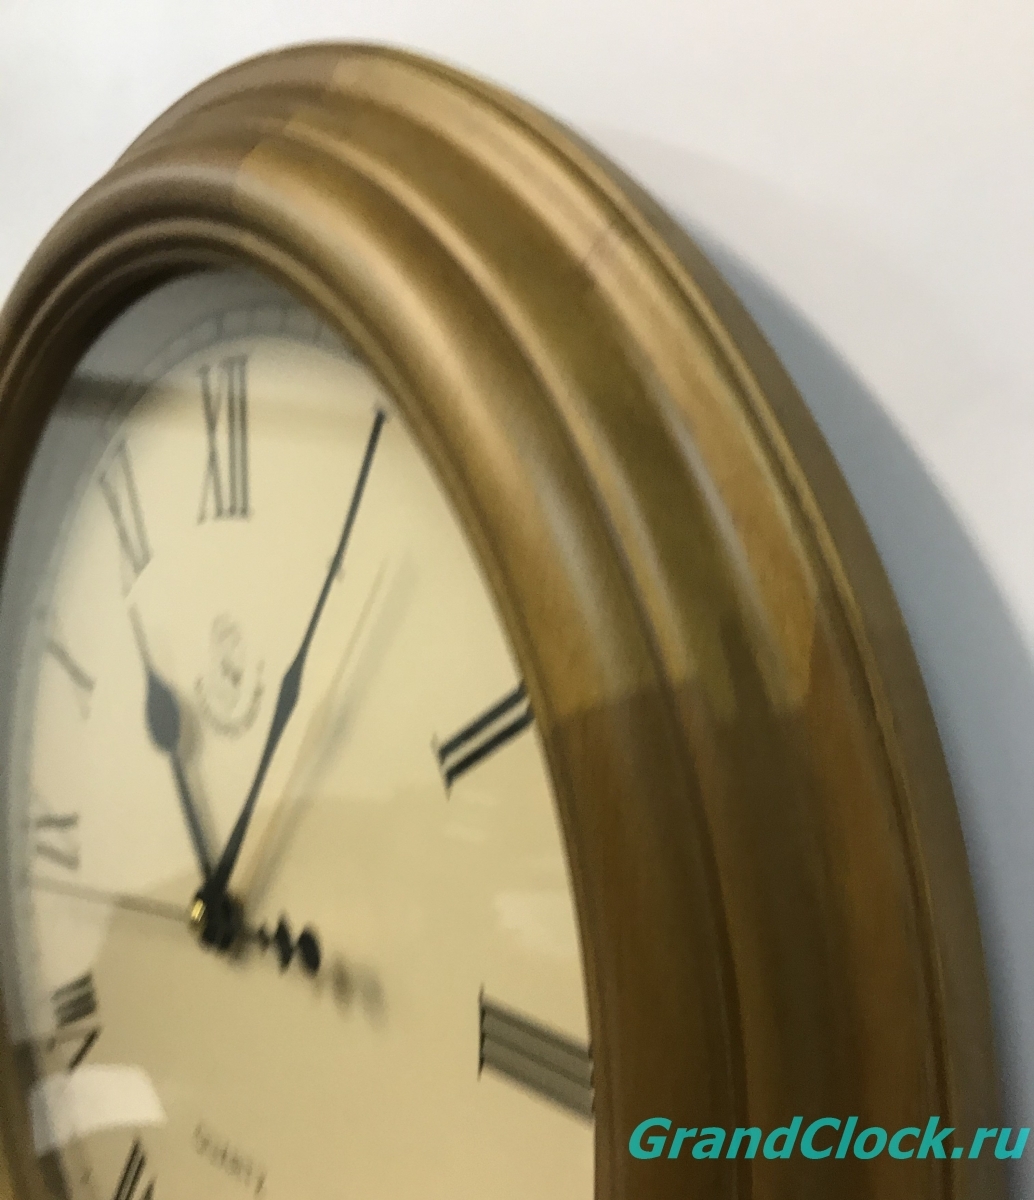 Настенные часы WOODPECKER в деревянном корпусе 8007 (06)